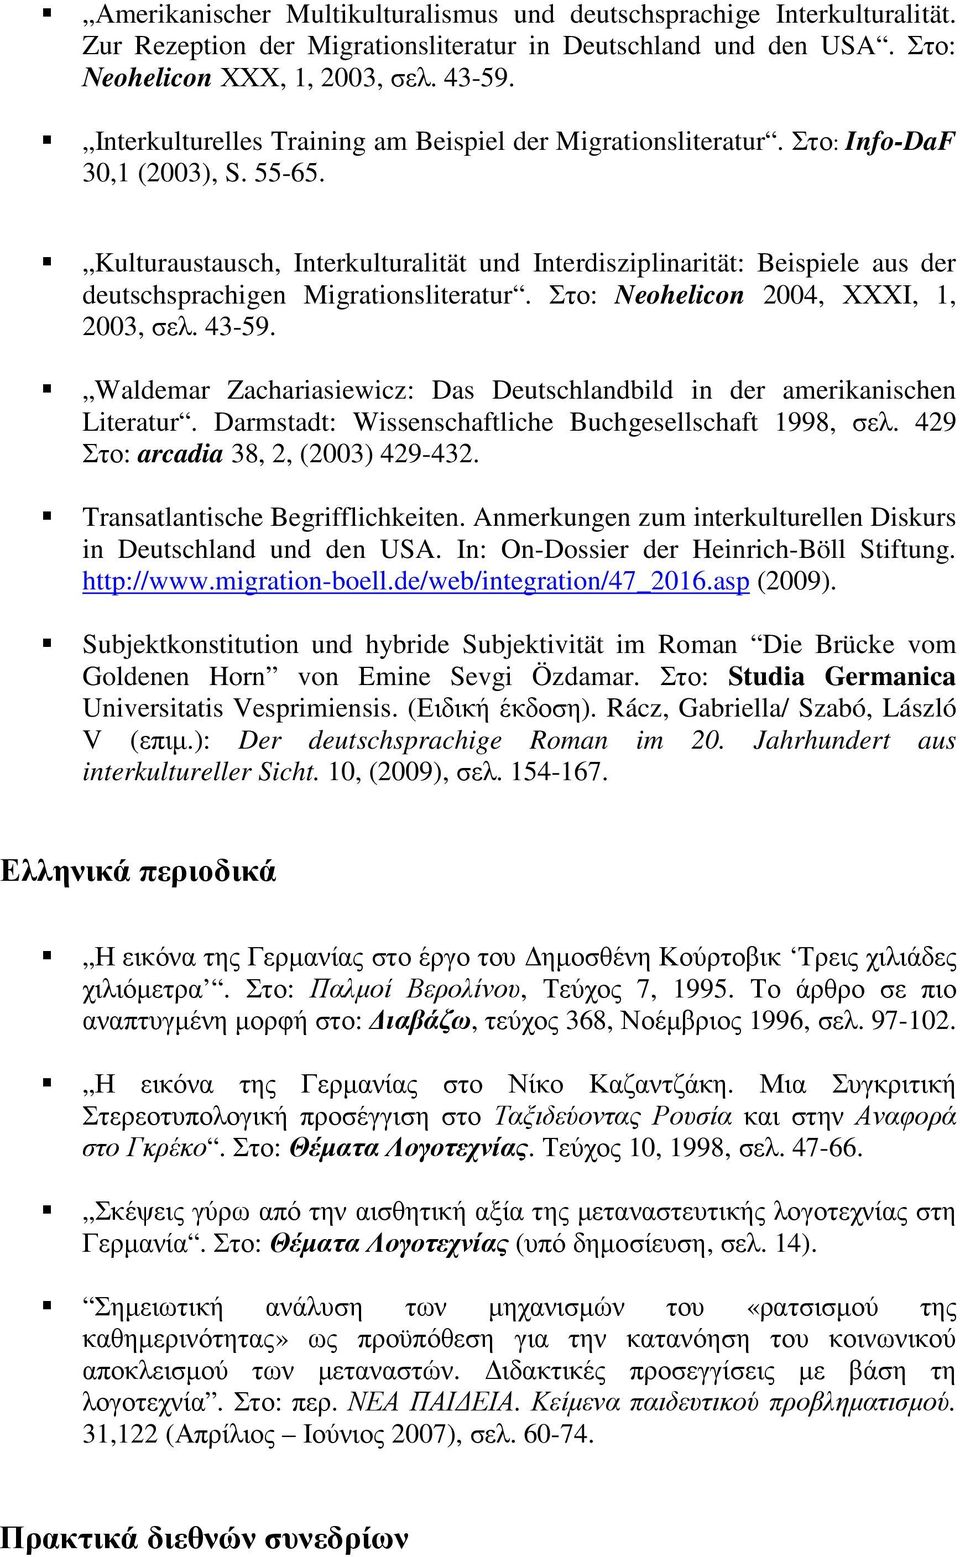 Kulturaustausch, Interkulturalität und Interdisziplinarität: Beispiele aus der deutschsprachigen Migrationsliteratur. Στο: Neohelicon 2004, ΧΧΧΙ, 1, 2003, σελ. 43-59.